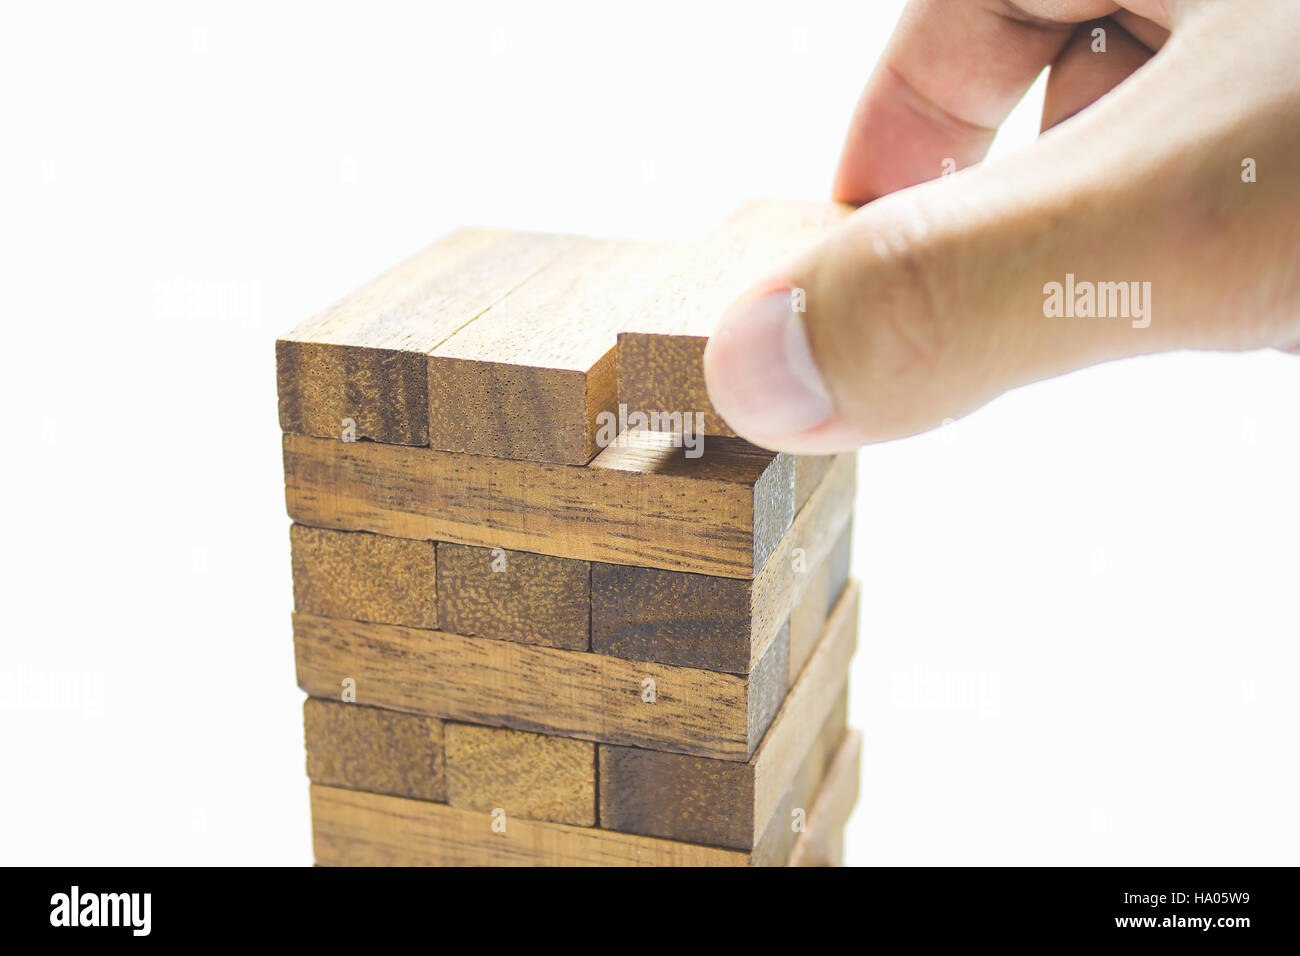 La planification, la stratégie et des risques en affaires, homme d'affaires de placer le jeu de cubes en bois sur une tour Banque D'Images